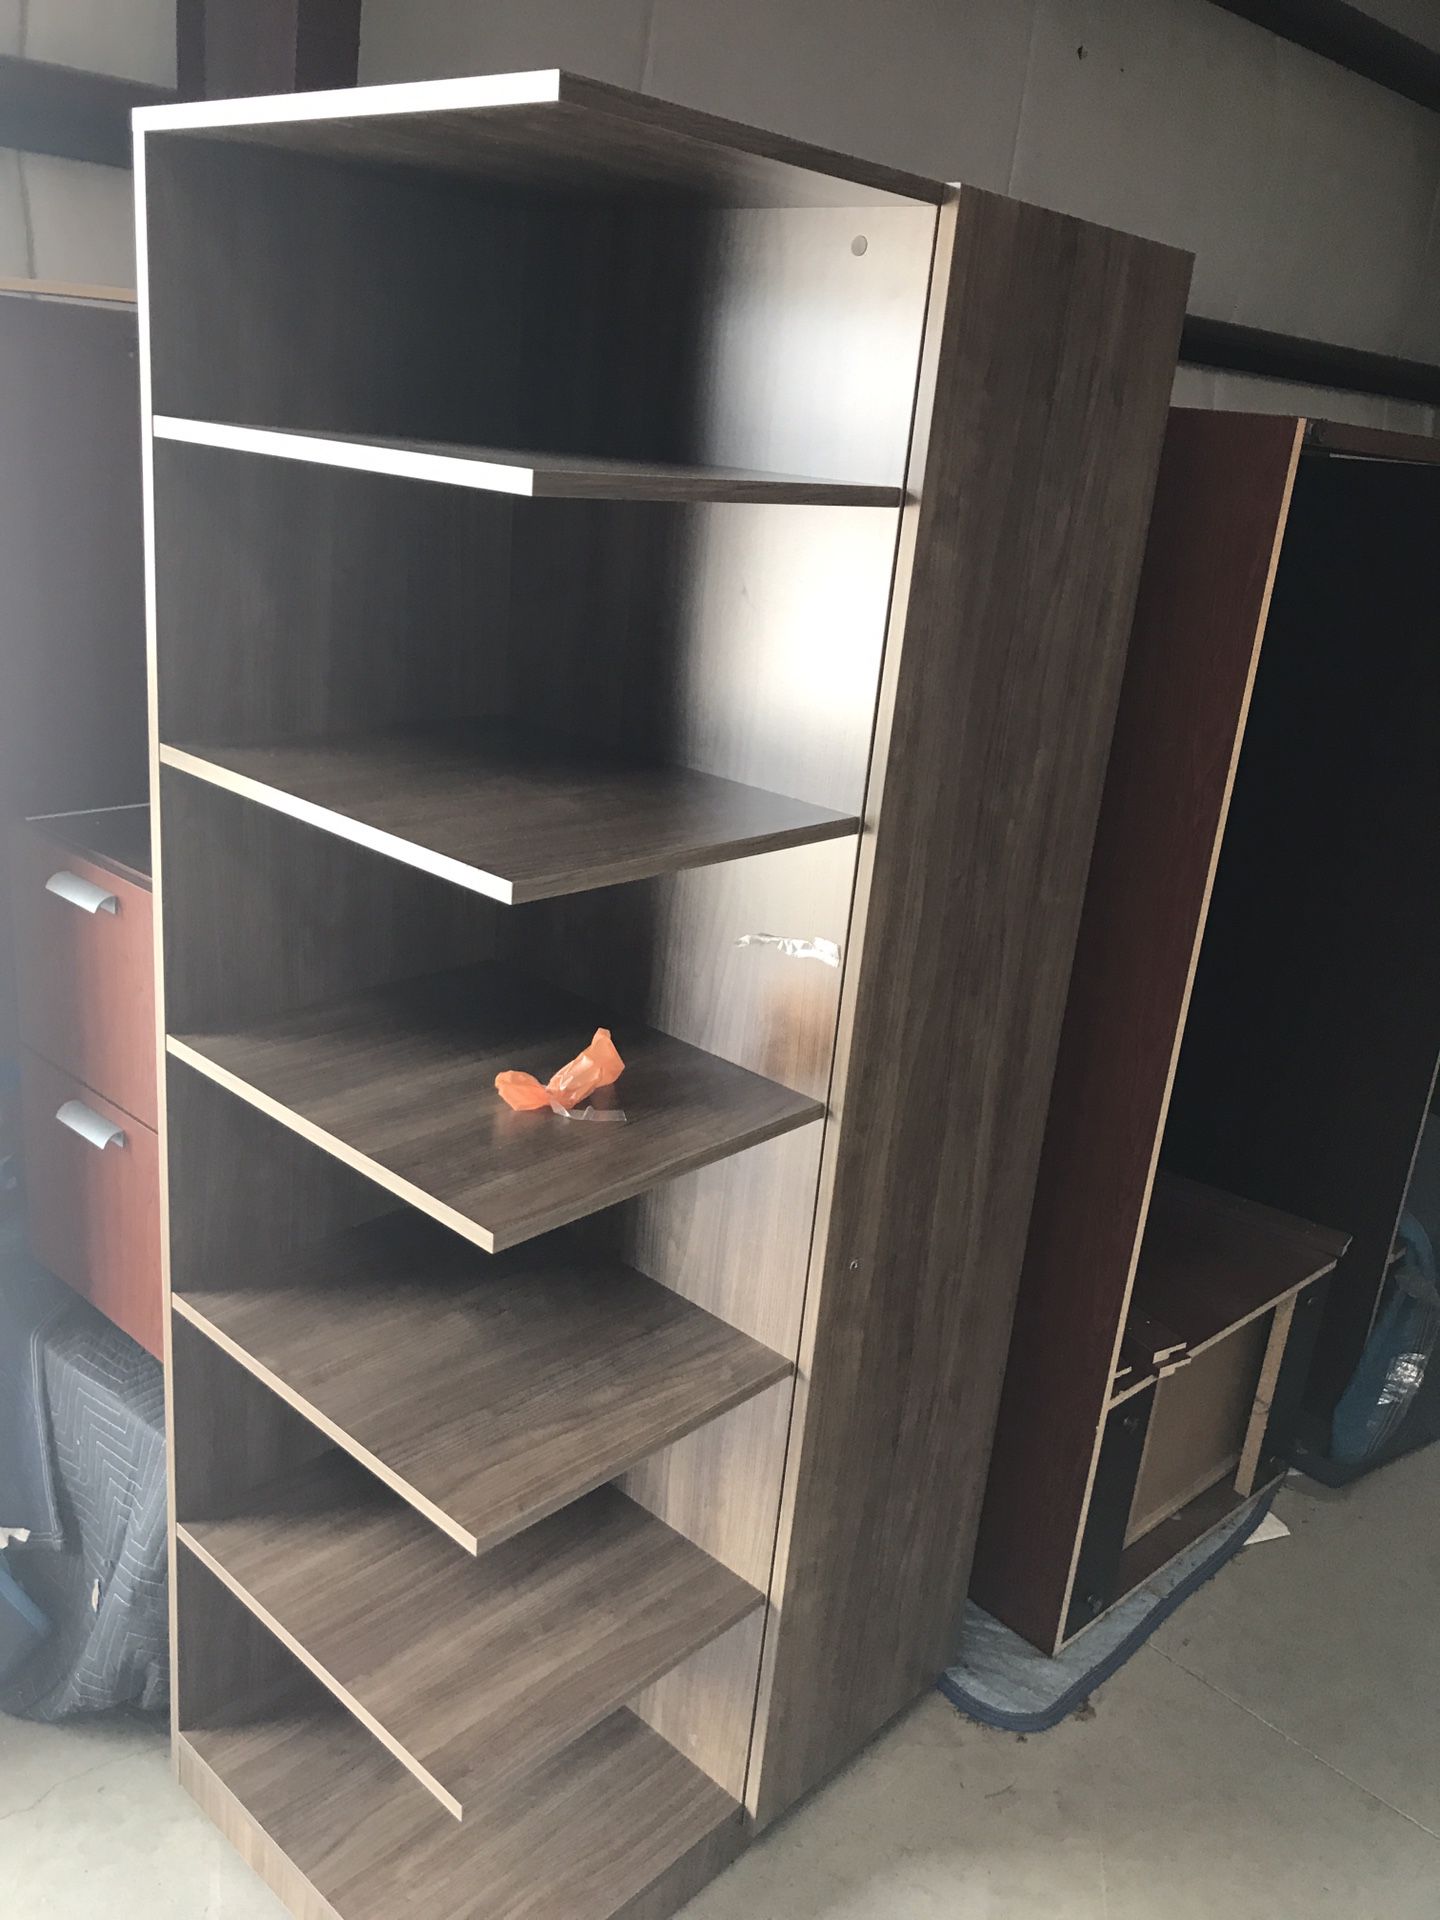 Shelf and Locking Cabinet w/ matching small shelf